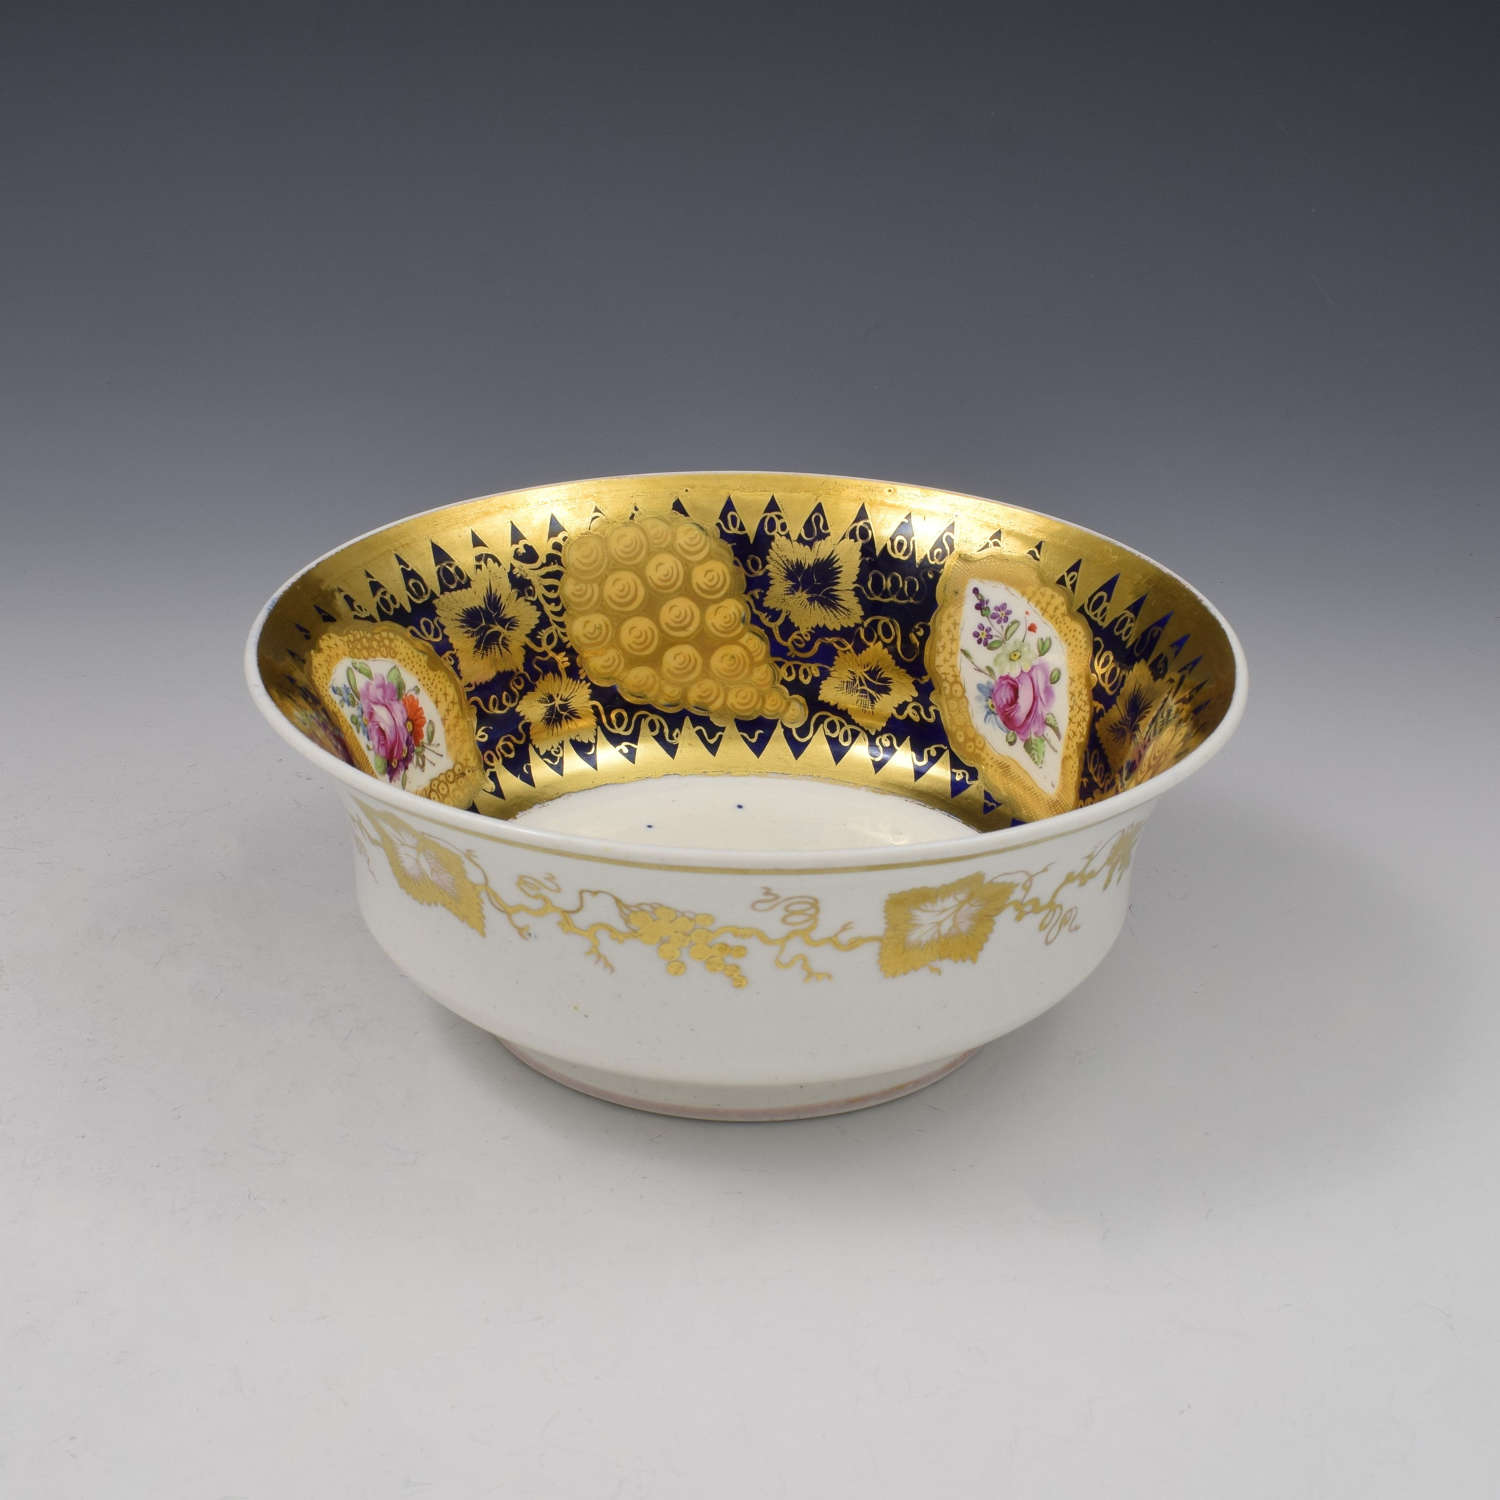 Spode Felspar Porcelain Slop Bowl Pattern 4003 c.1825